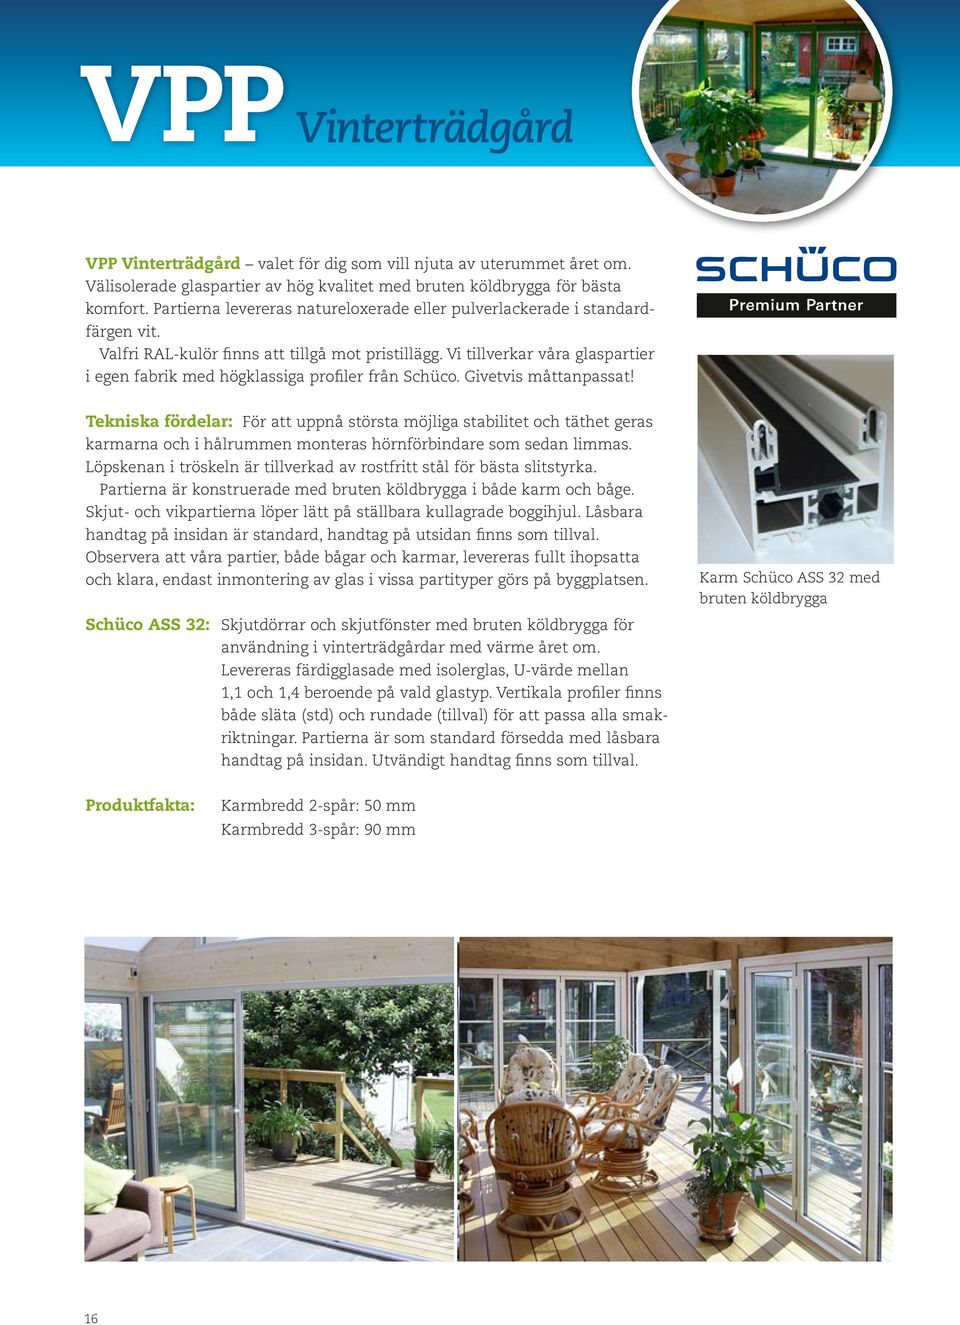 Vi tillverkar våra glaspartier i egen fabrik med högklassiga profiler från Schüco. Givetvis måttanpassat!